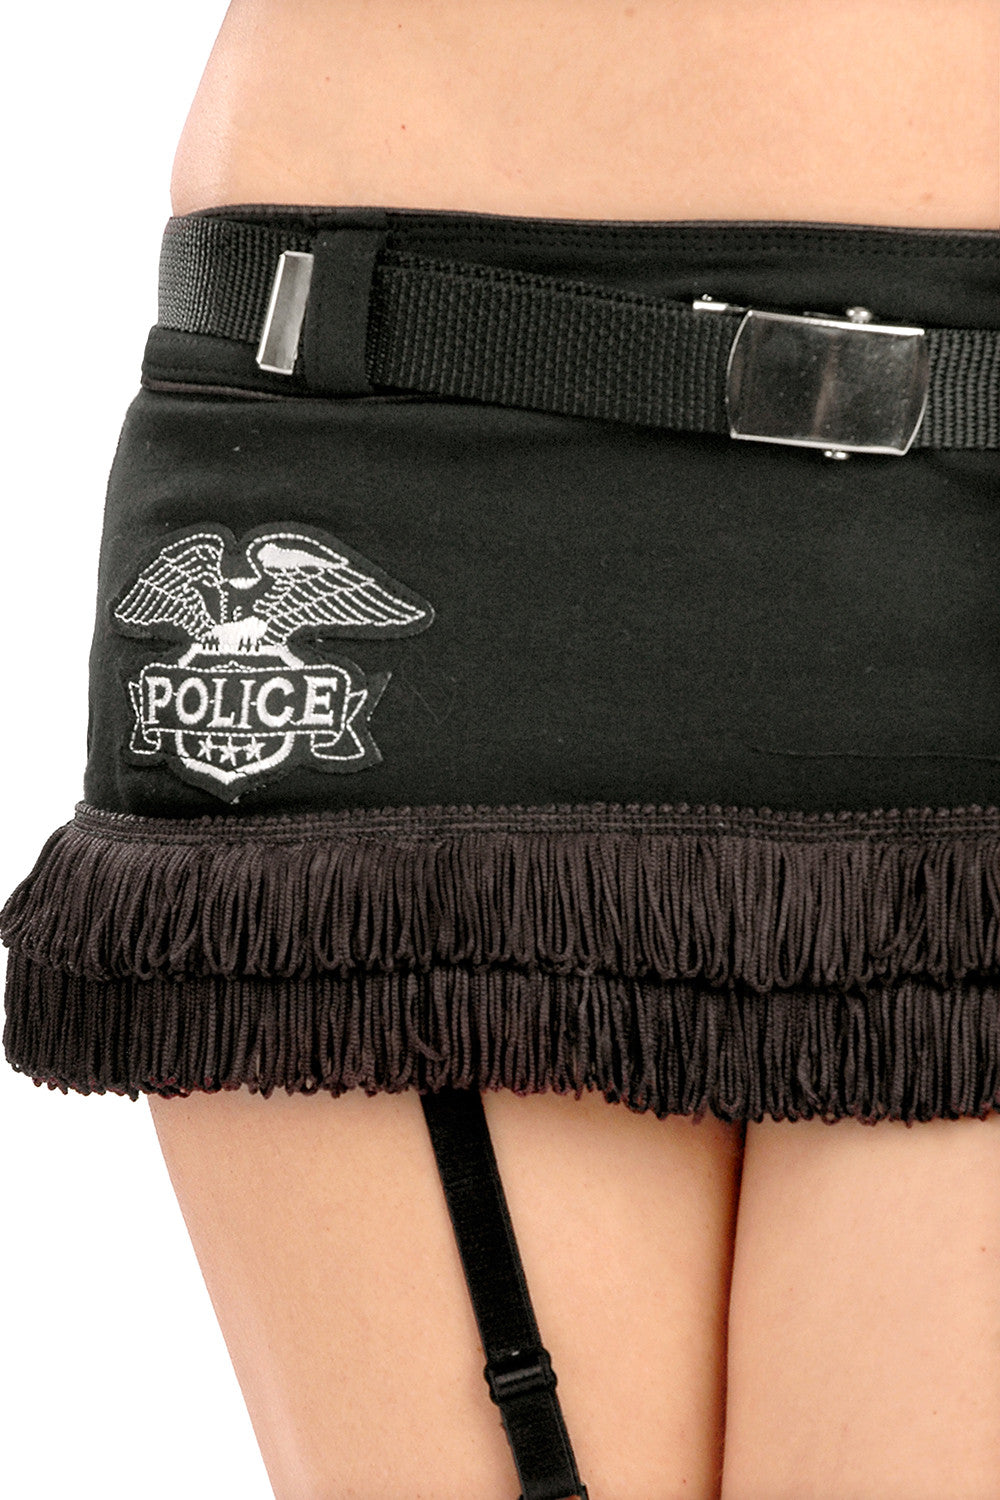 Burlesque Cop Skirt with Belt